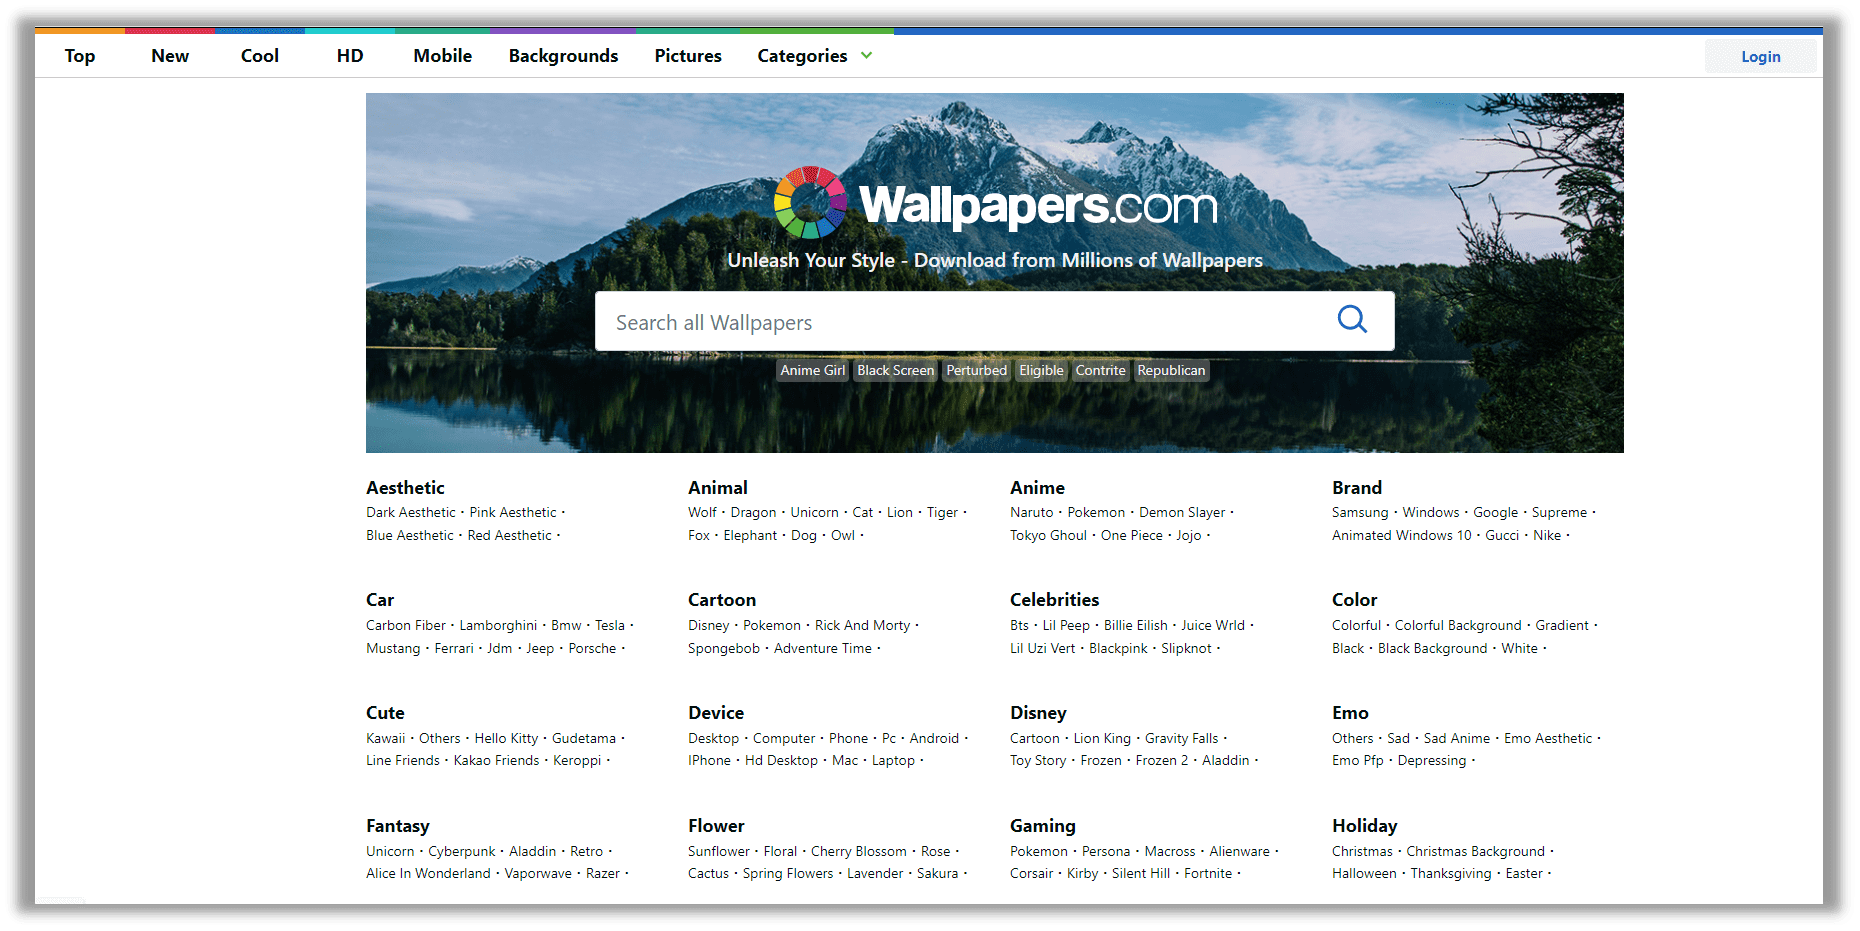 Wallpapers.com - best wallpaper download site